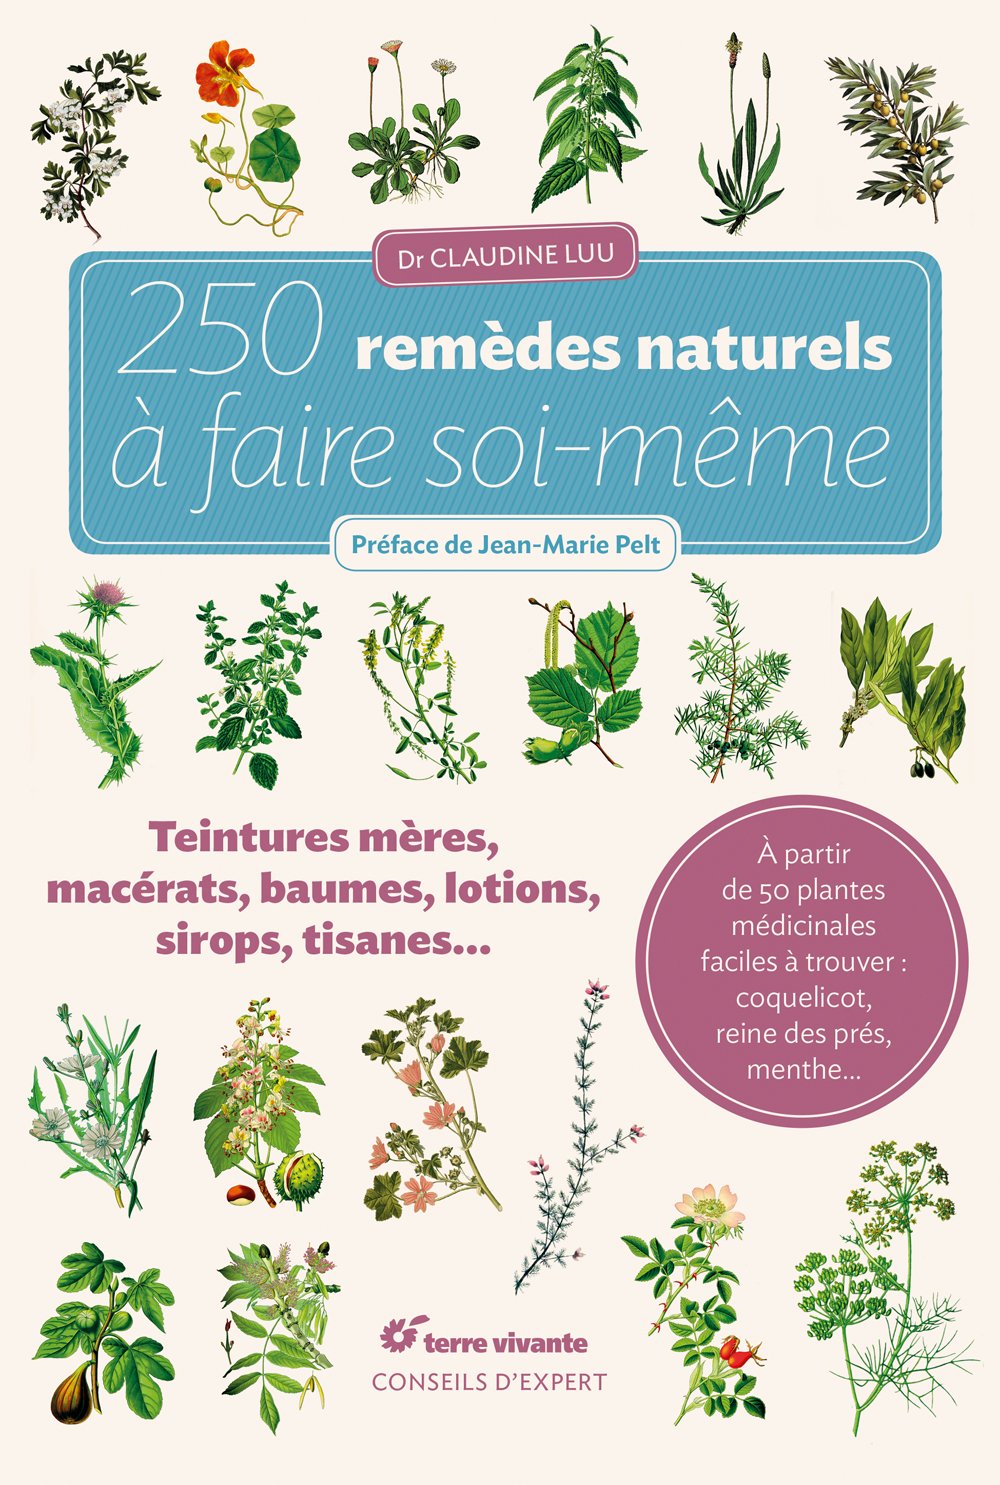 Livre, 250 remèdes naturels à faire soi-même, Claudine Luu, remèdes, herboristerie, terre vivante, nature, soin, plantes